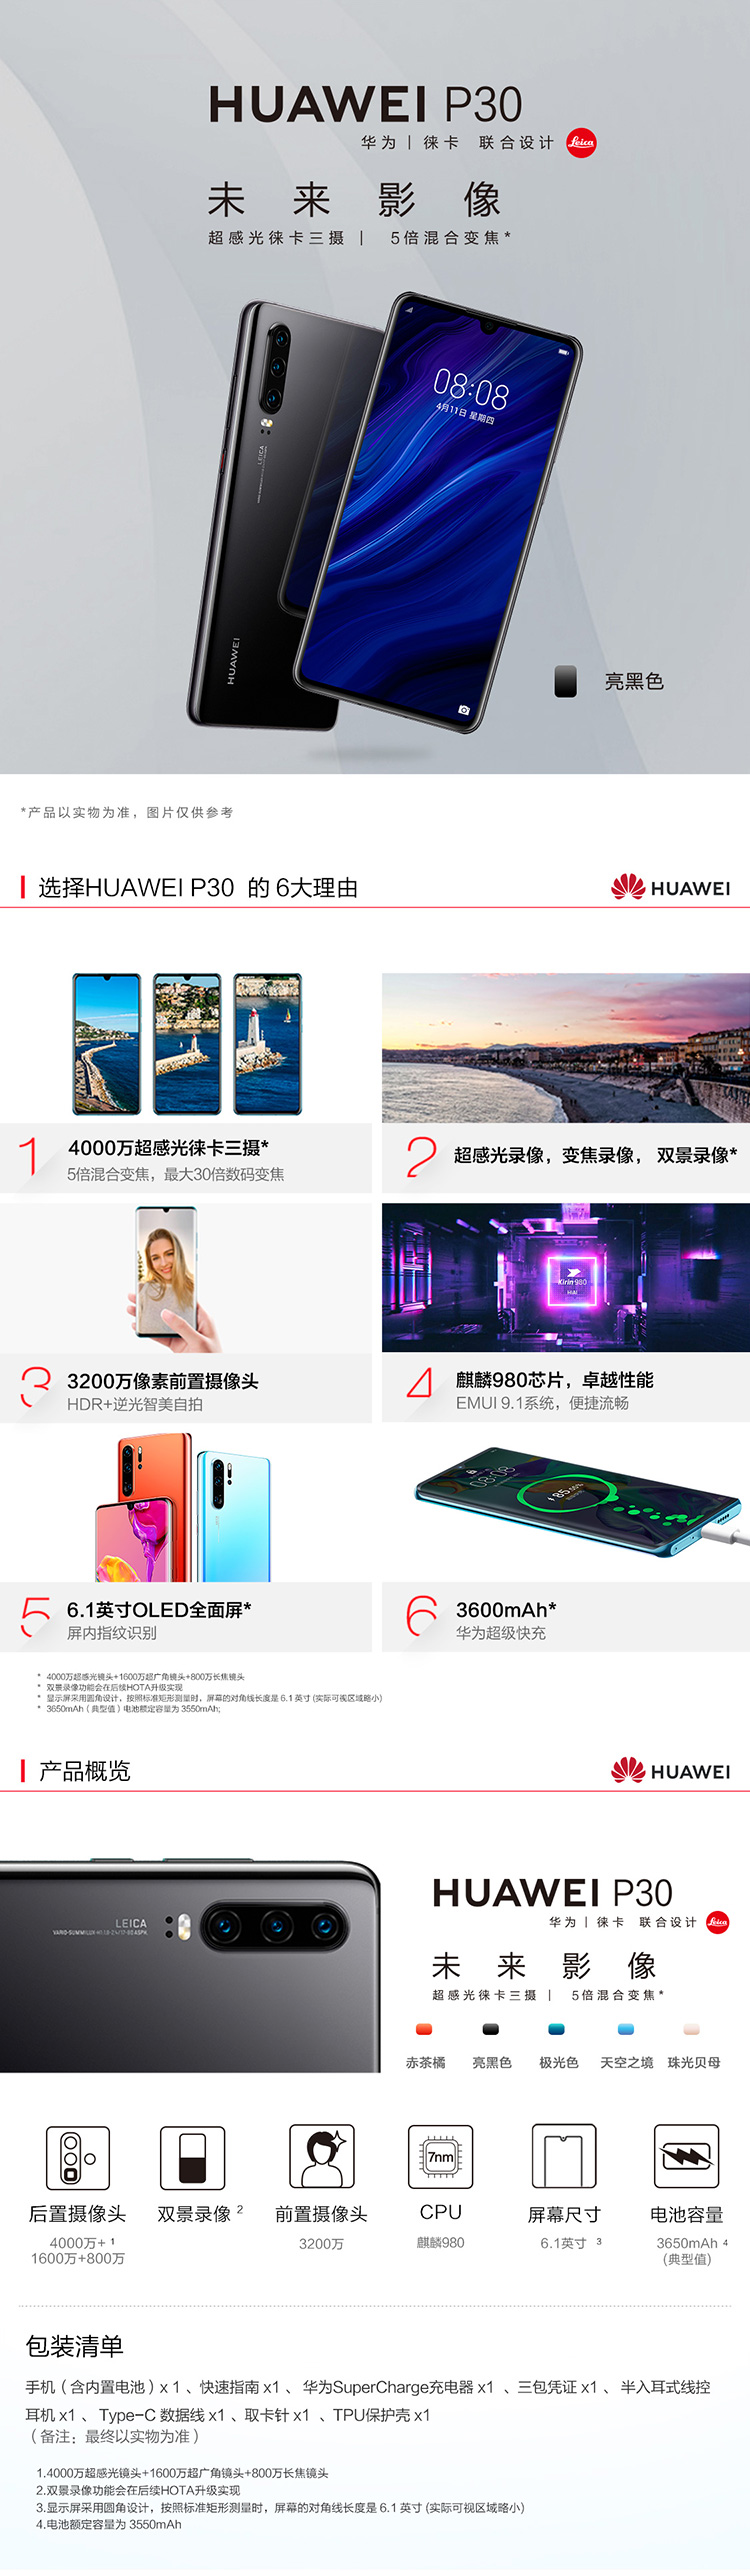 中山手机网 华为(huawei) 华为 p30手机专卖